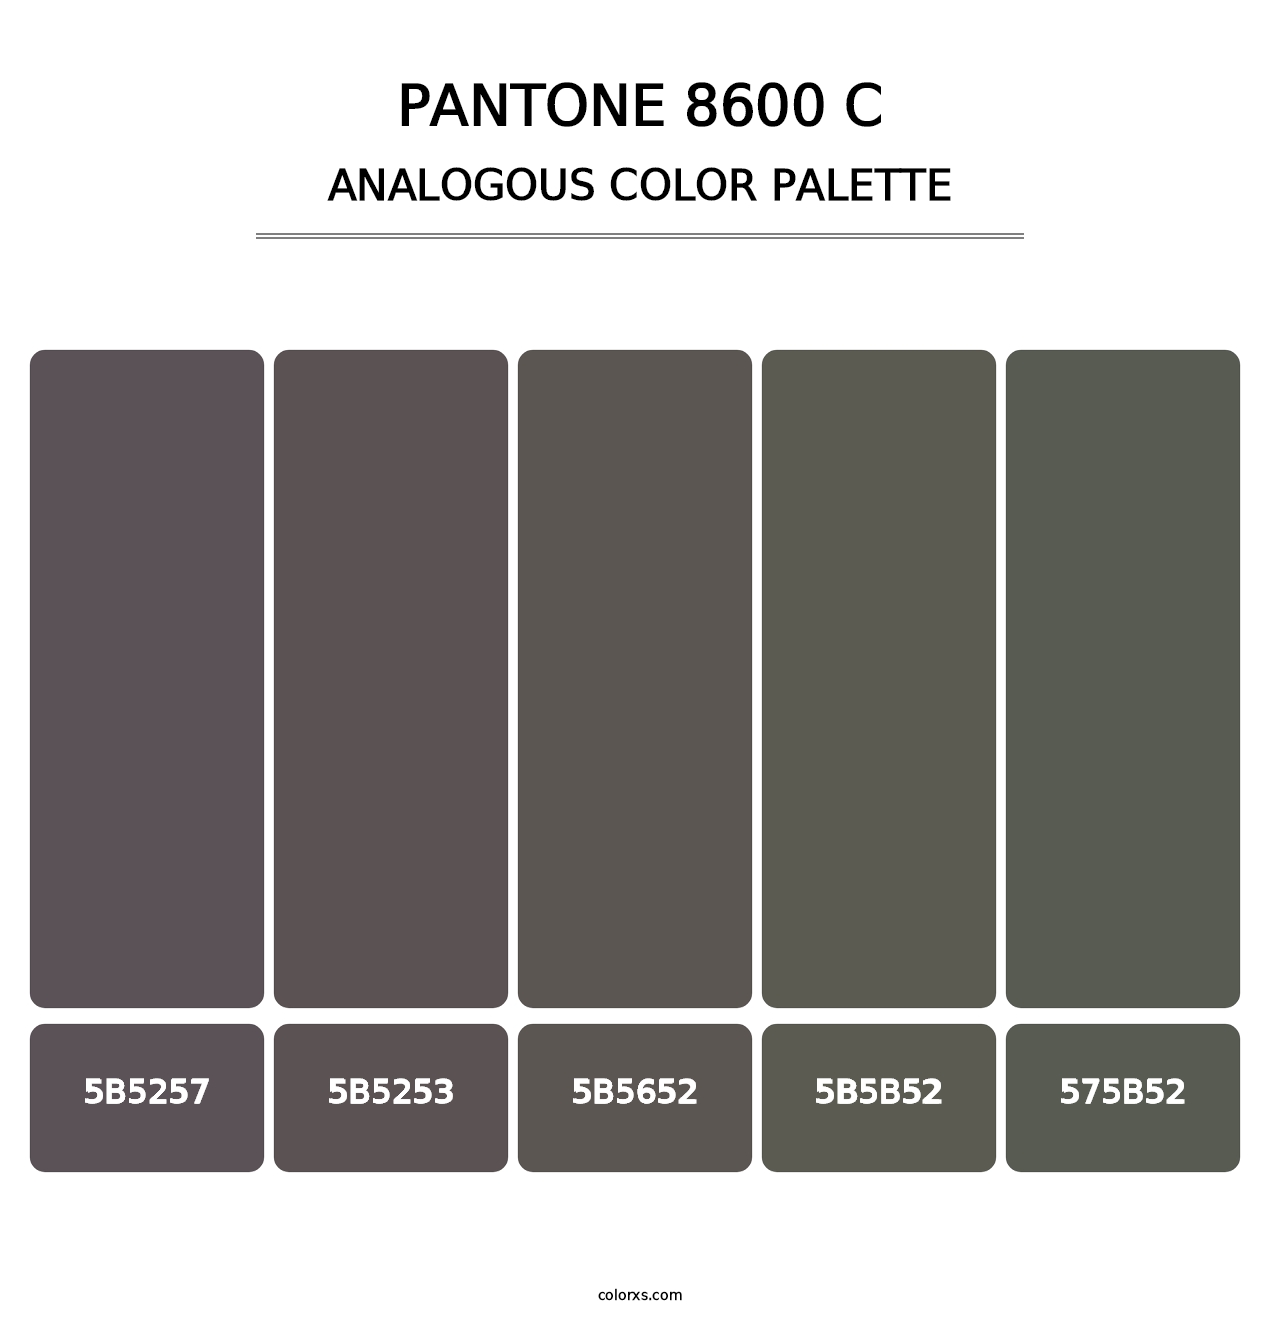 PANTONE 8600 C - Analogous Color Palette